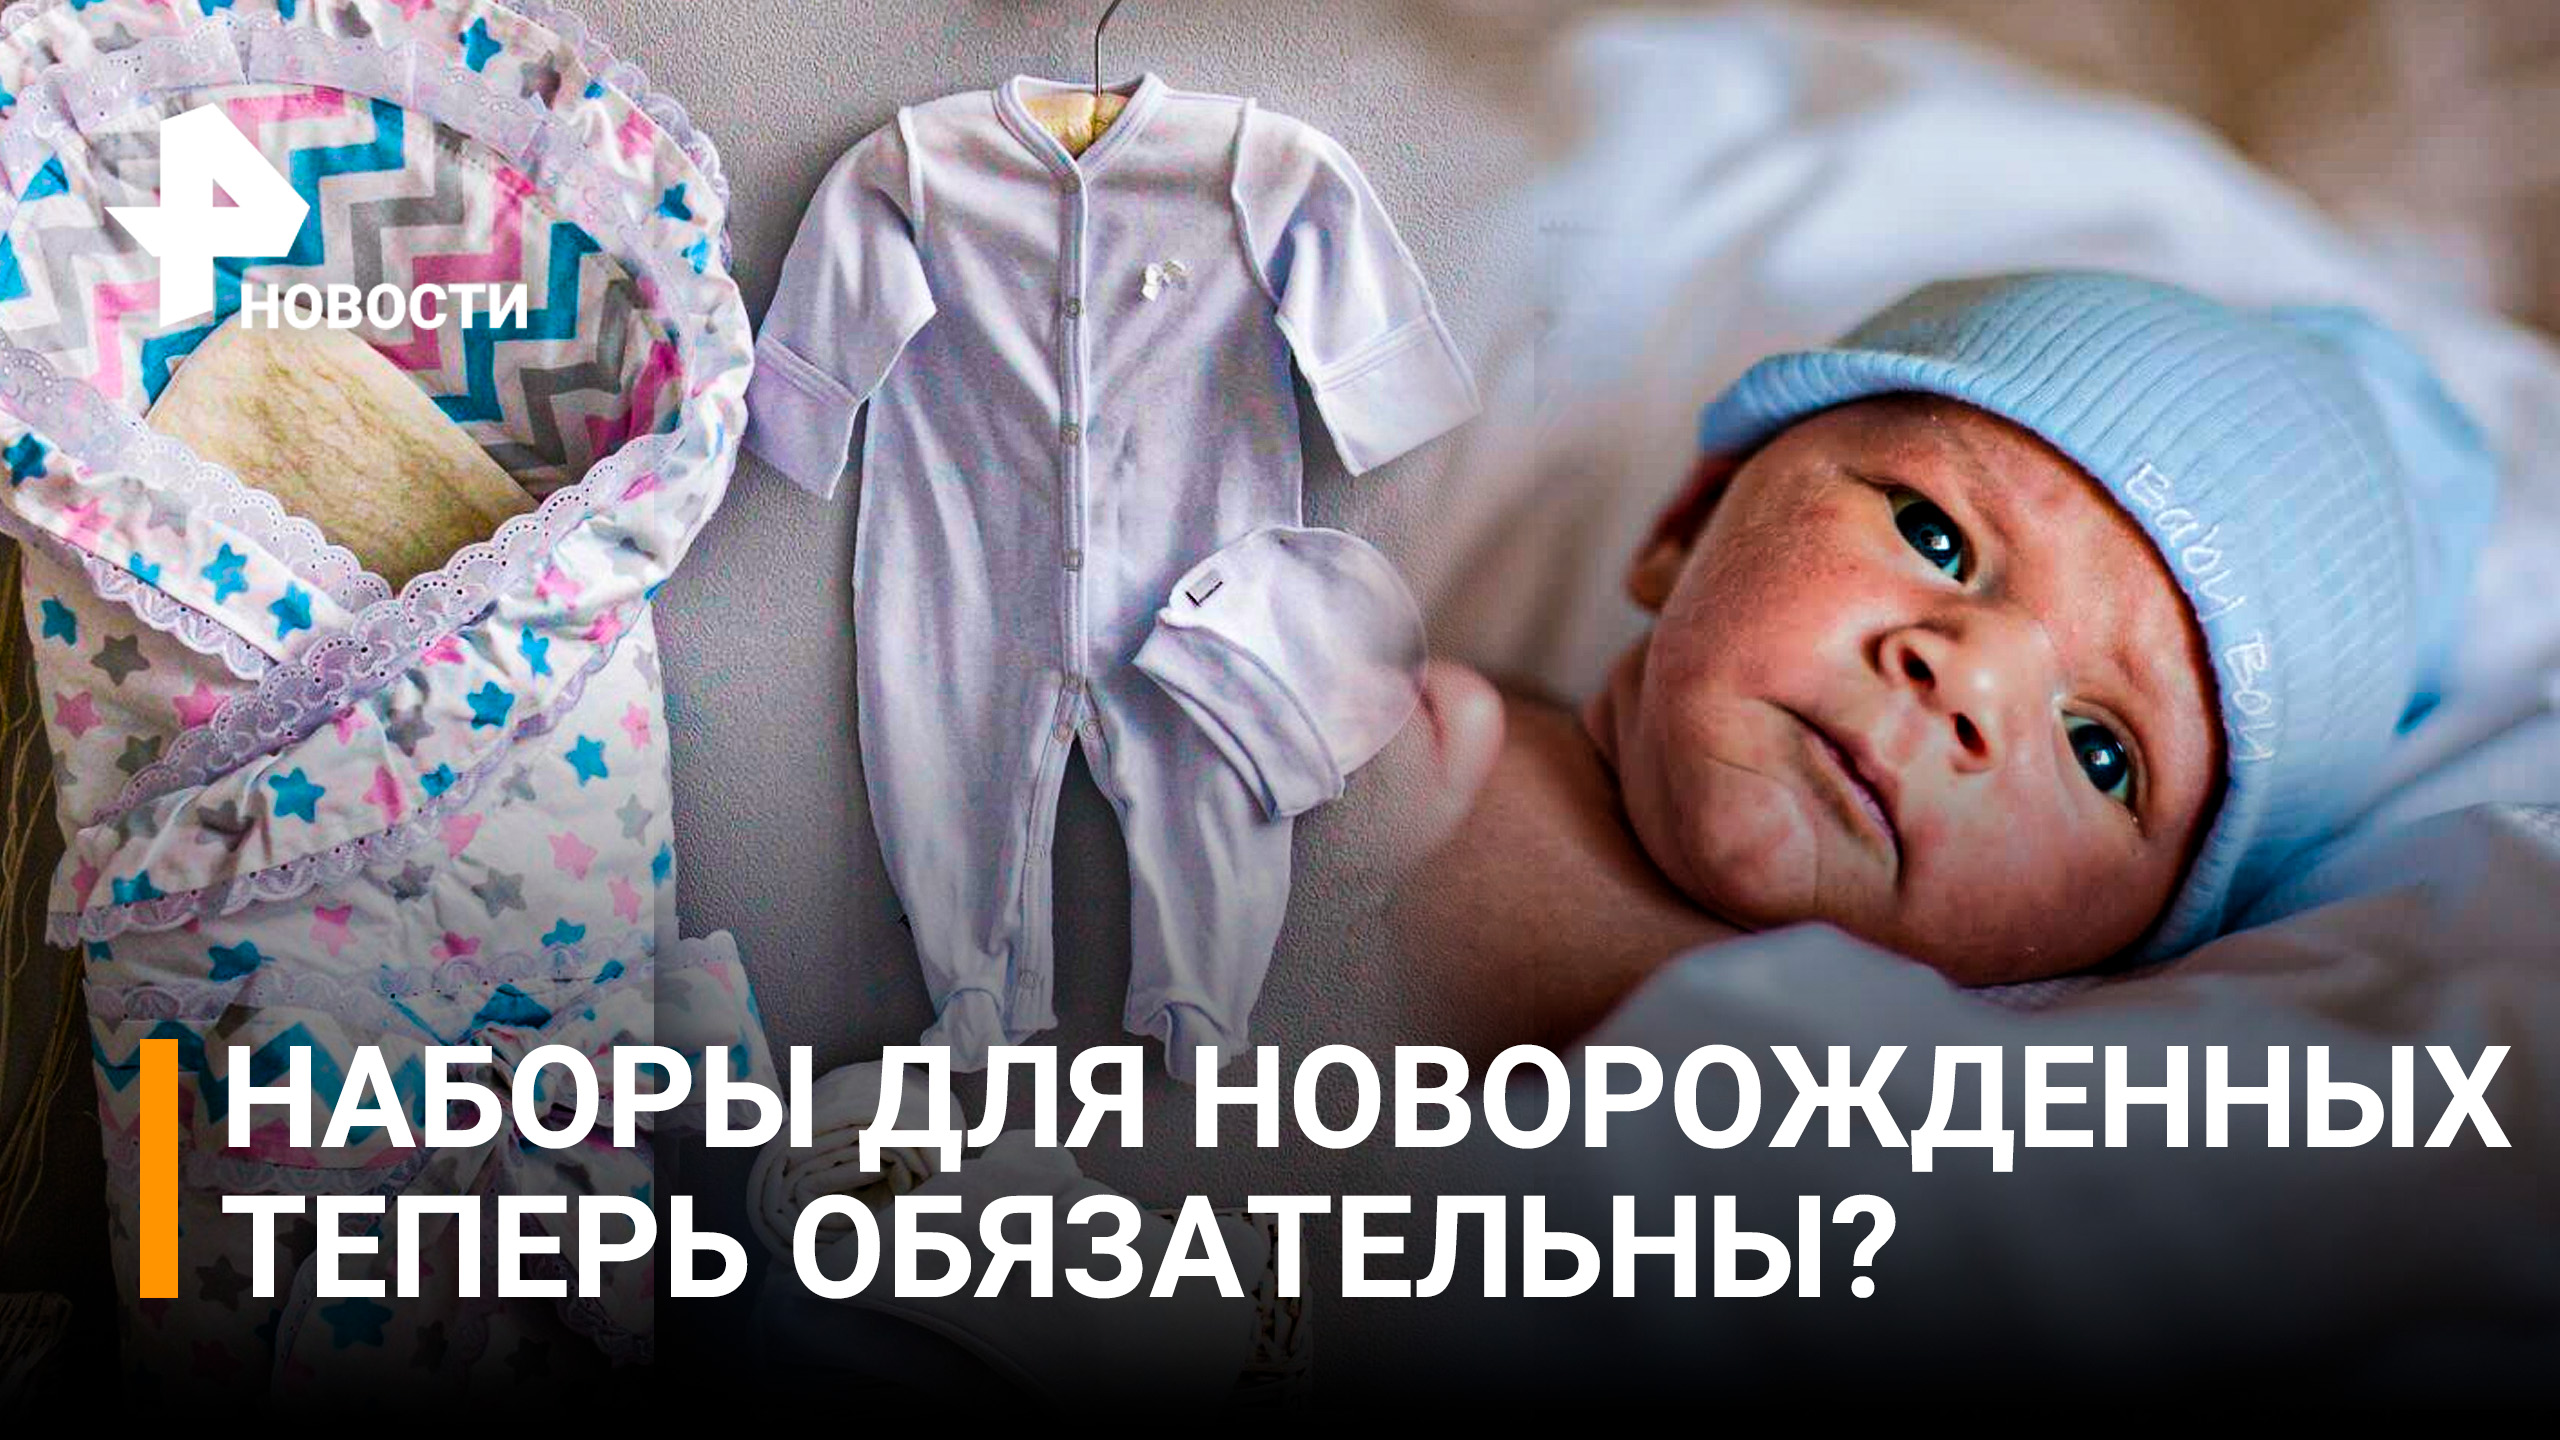 Наборы для новорожденных предложили дарить во всех регионах России / РЕН Новости